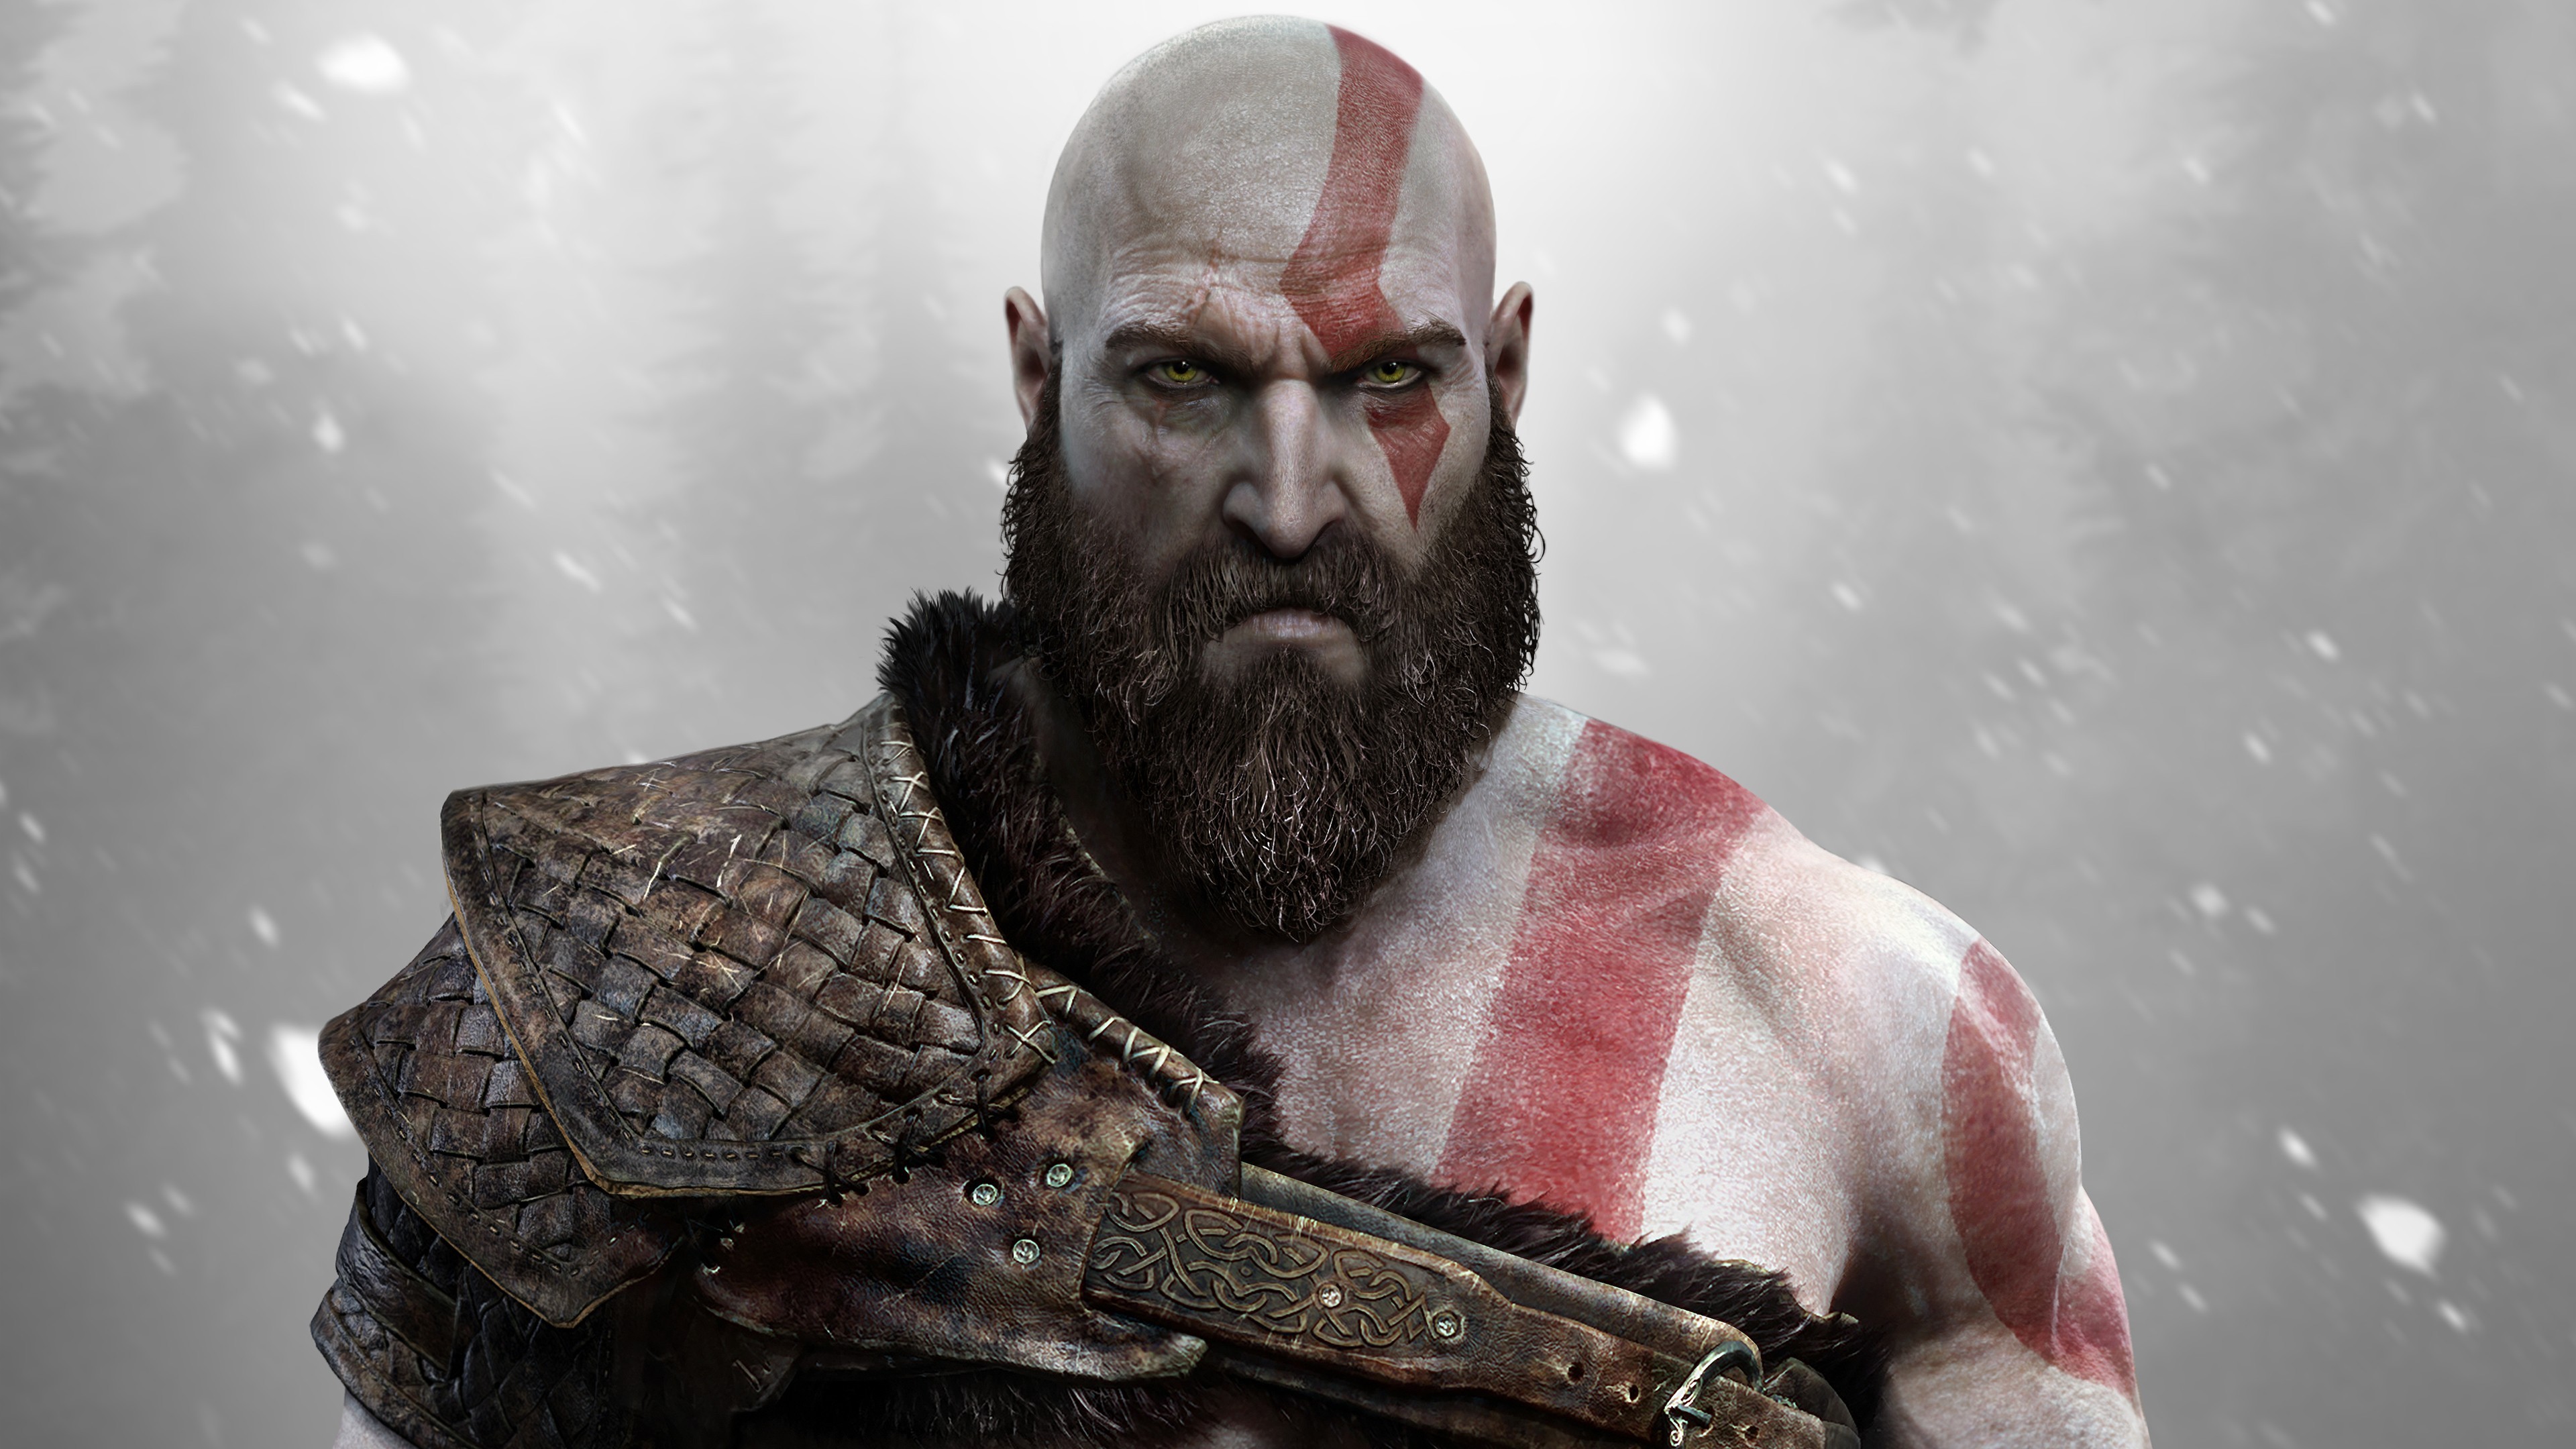 warrior, Beards, Video games, God of War Wallpaper